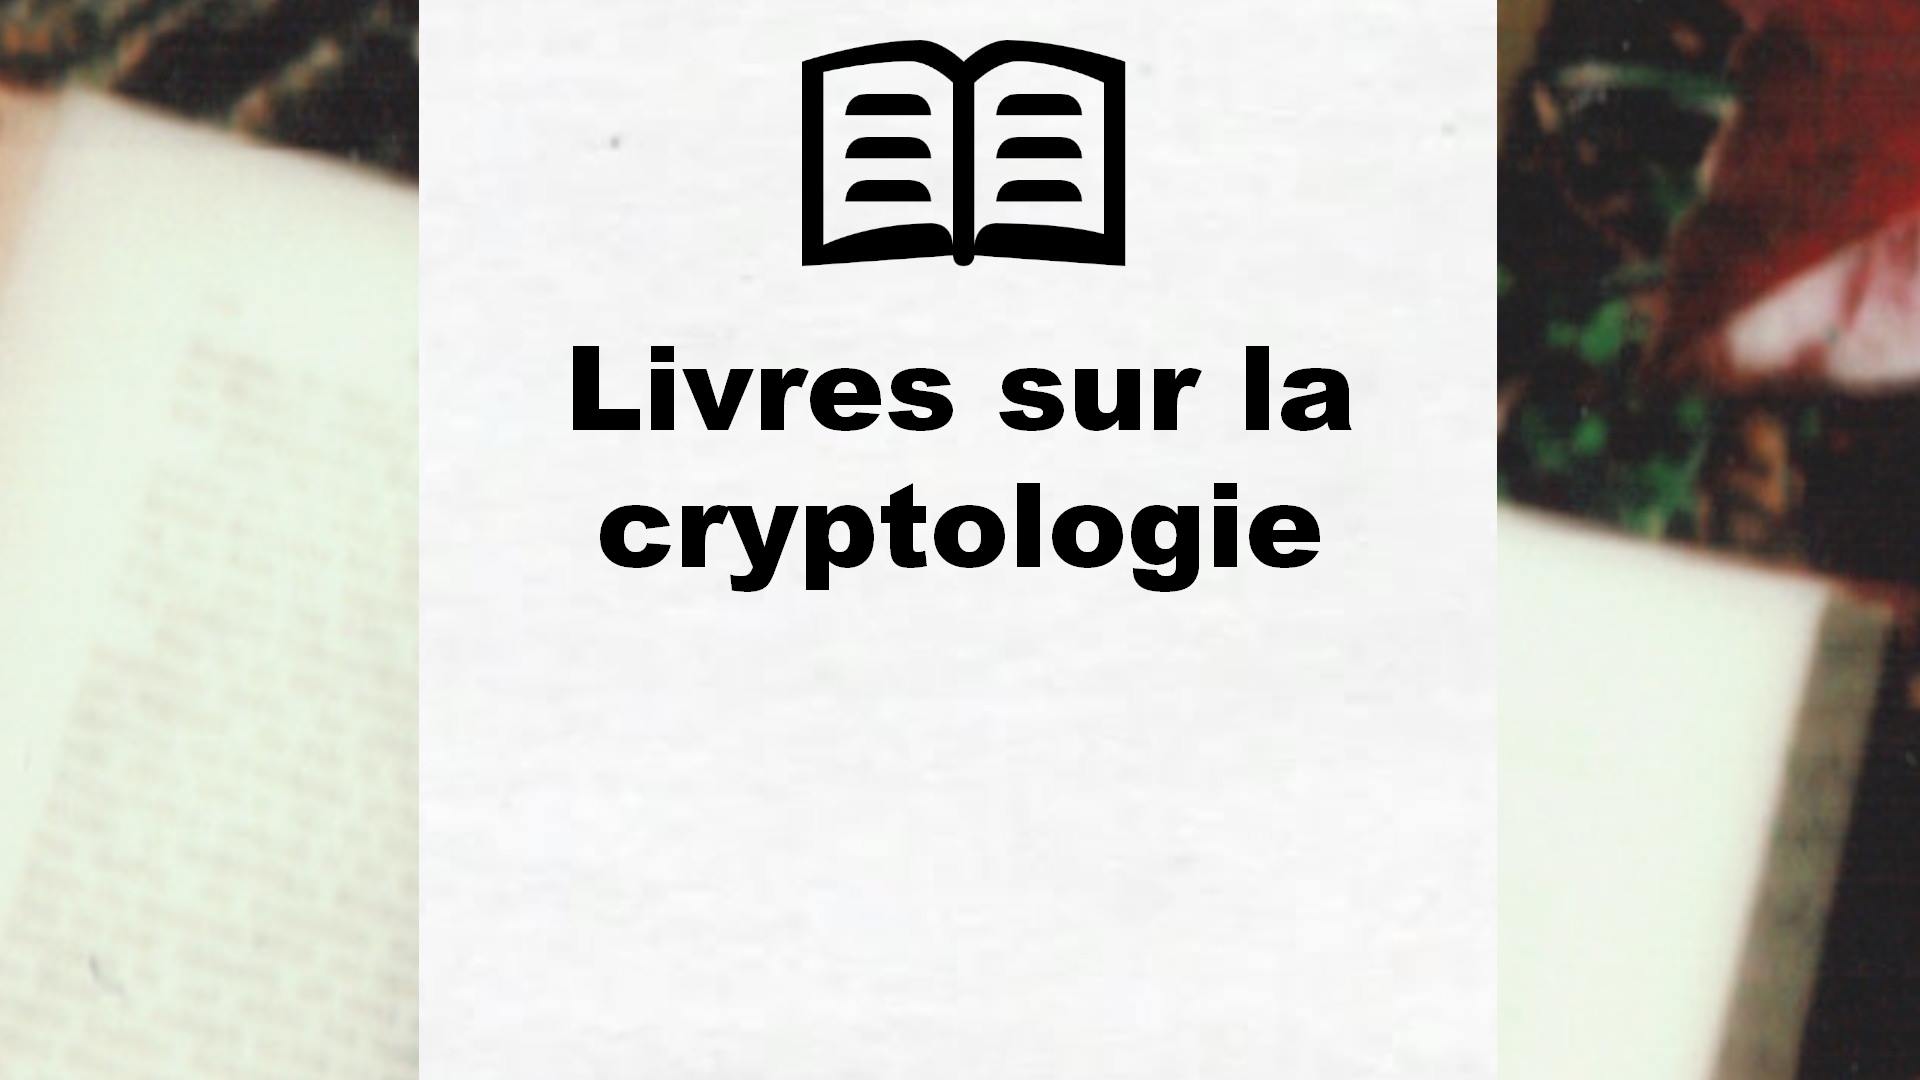 Livres sur la cryptologie